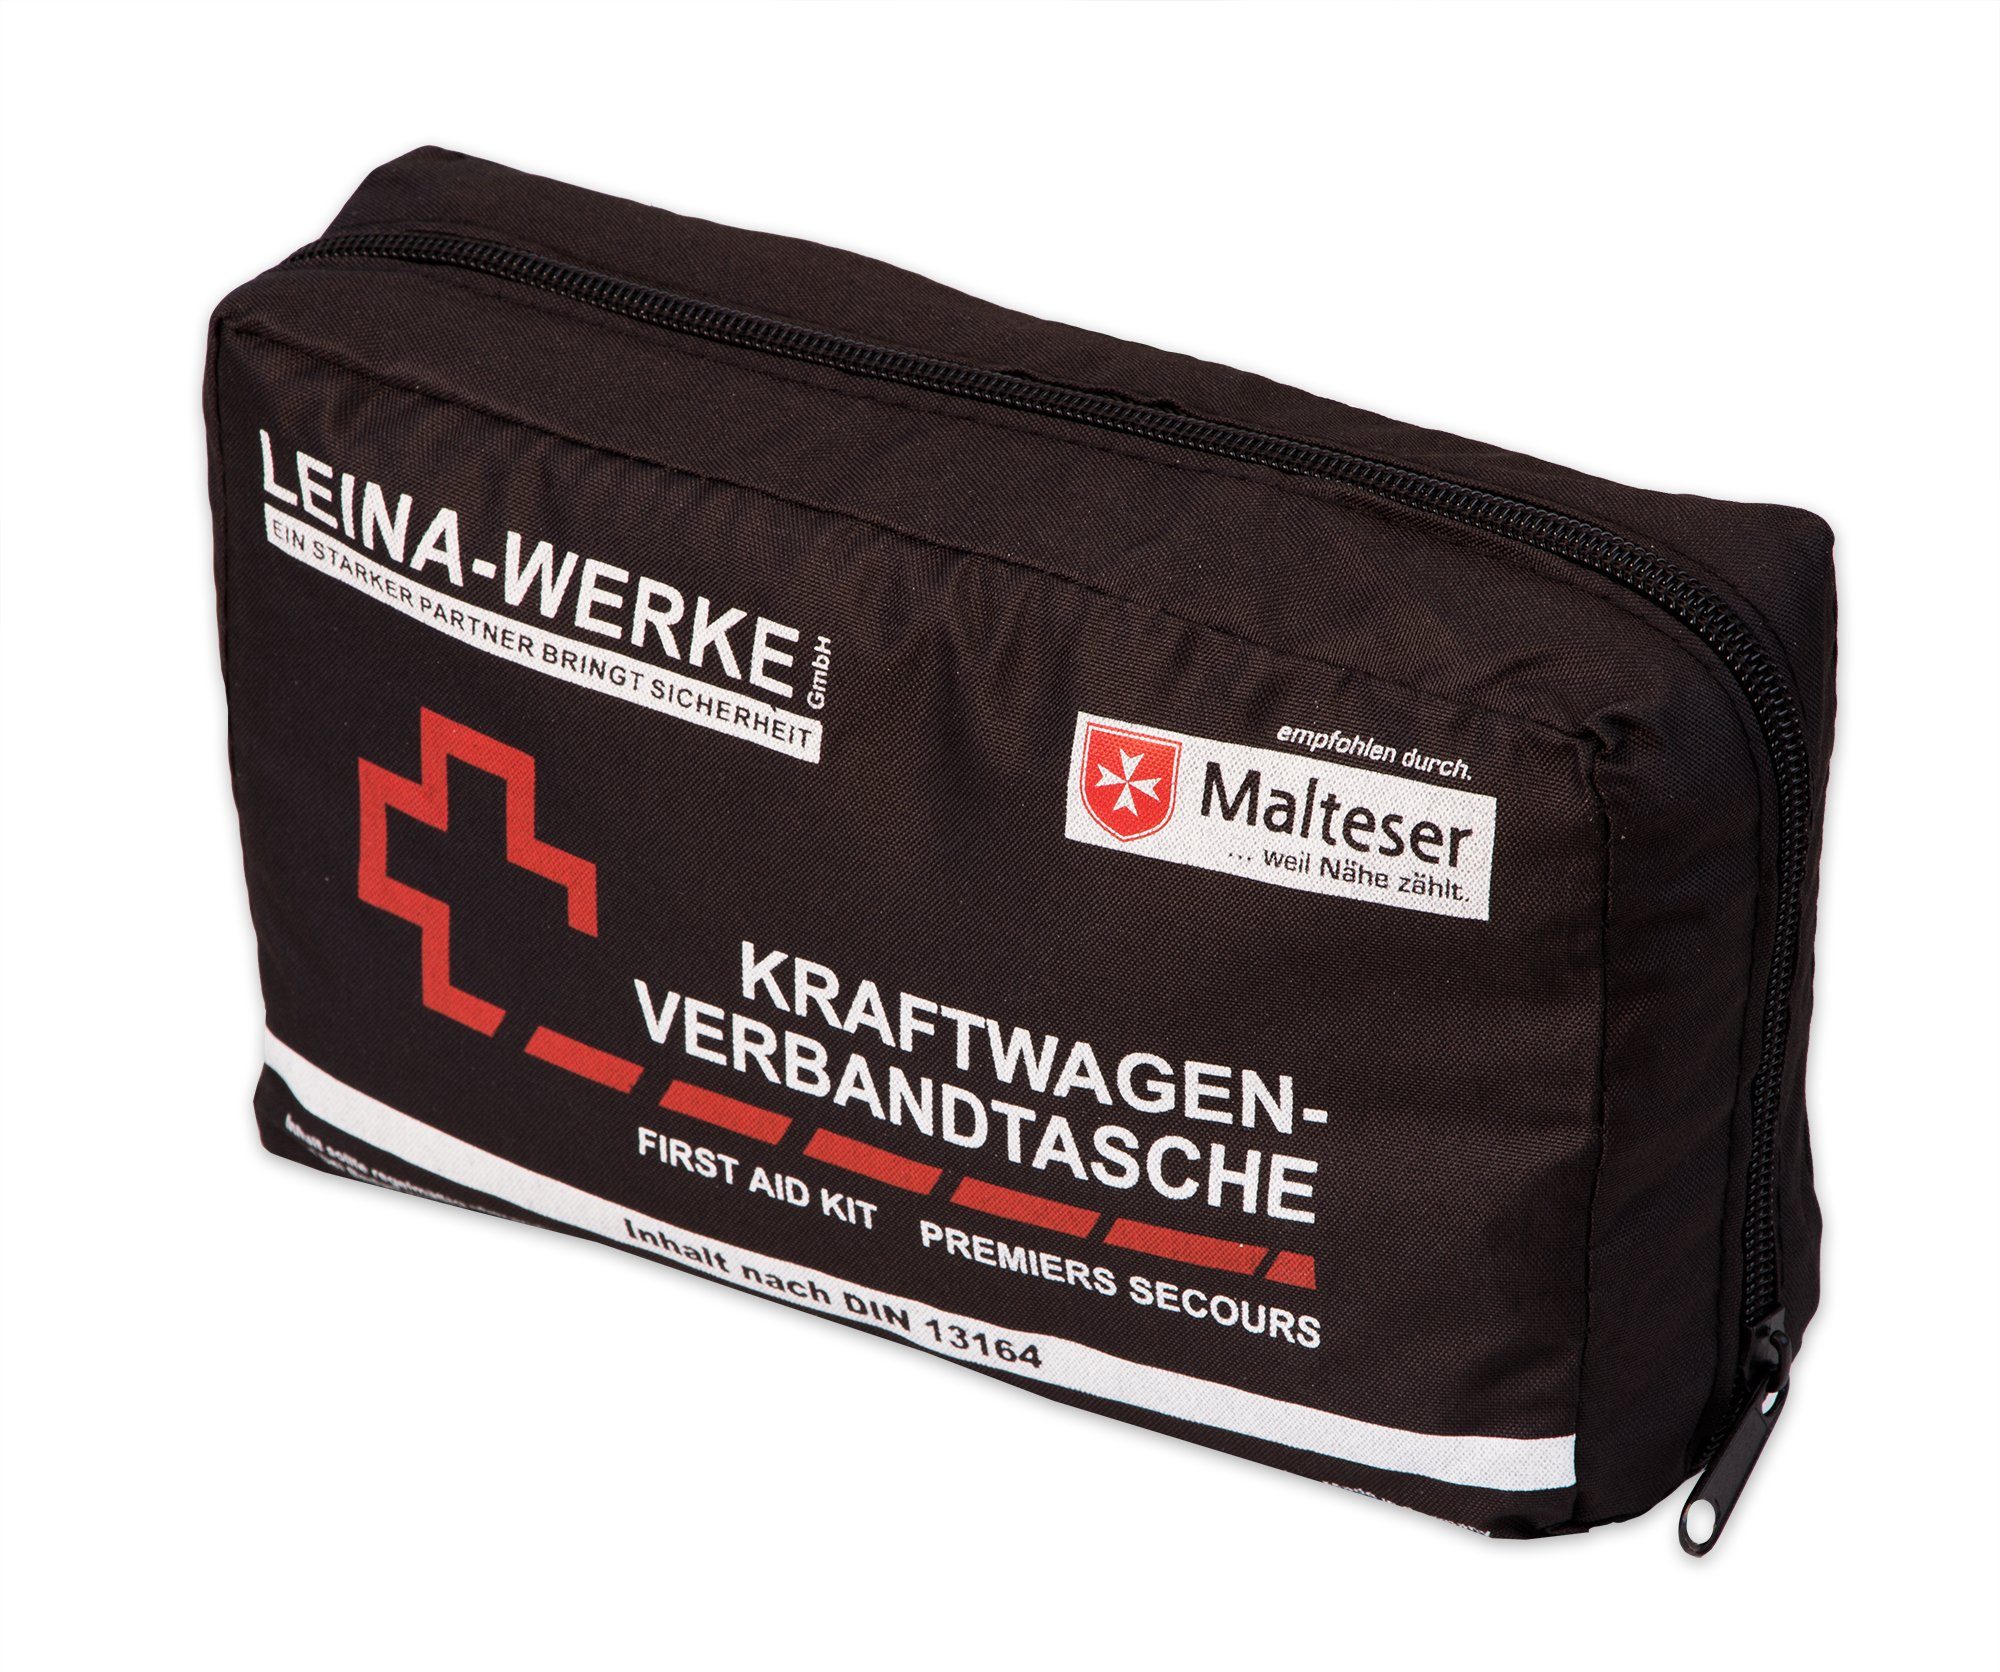 Holthaus Medical Kfz-Verbandtasche Auto-Verbandkasten mit Malteser  Anwendungsbroschüre DIN 13164 (Grau)